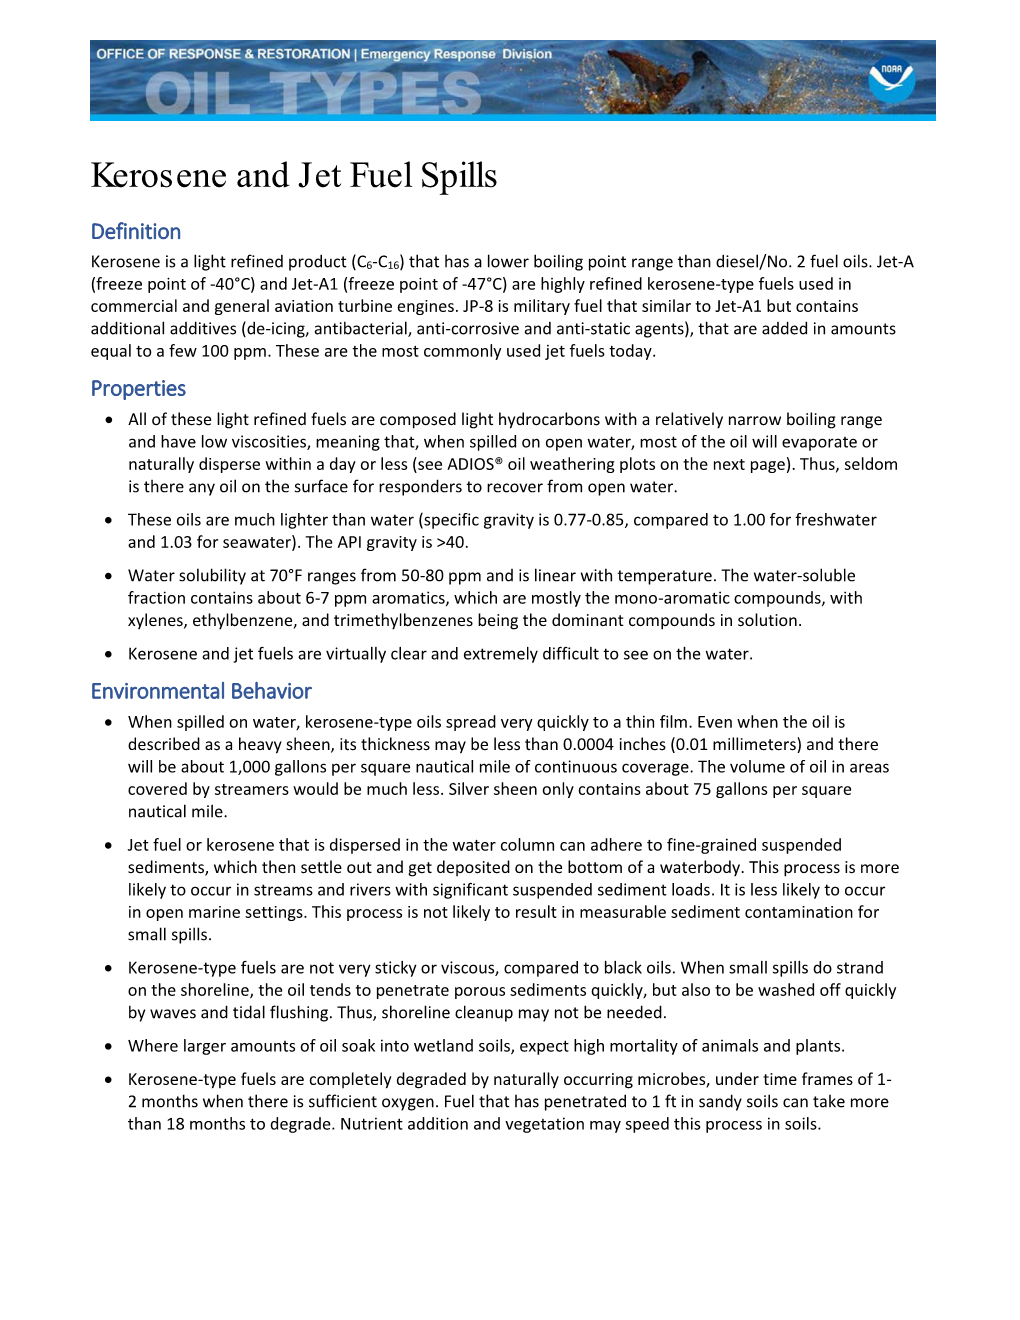 Kerosene and Jet Fuel Spills